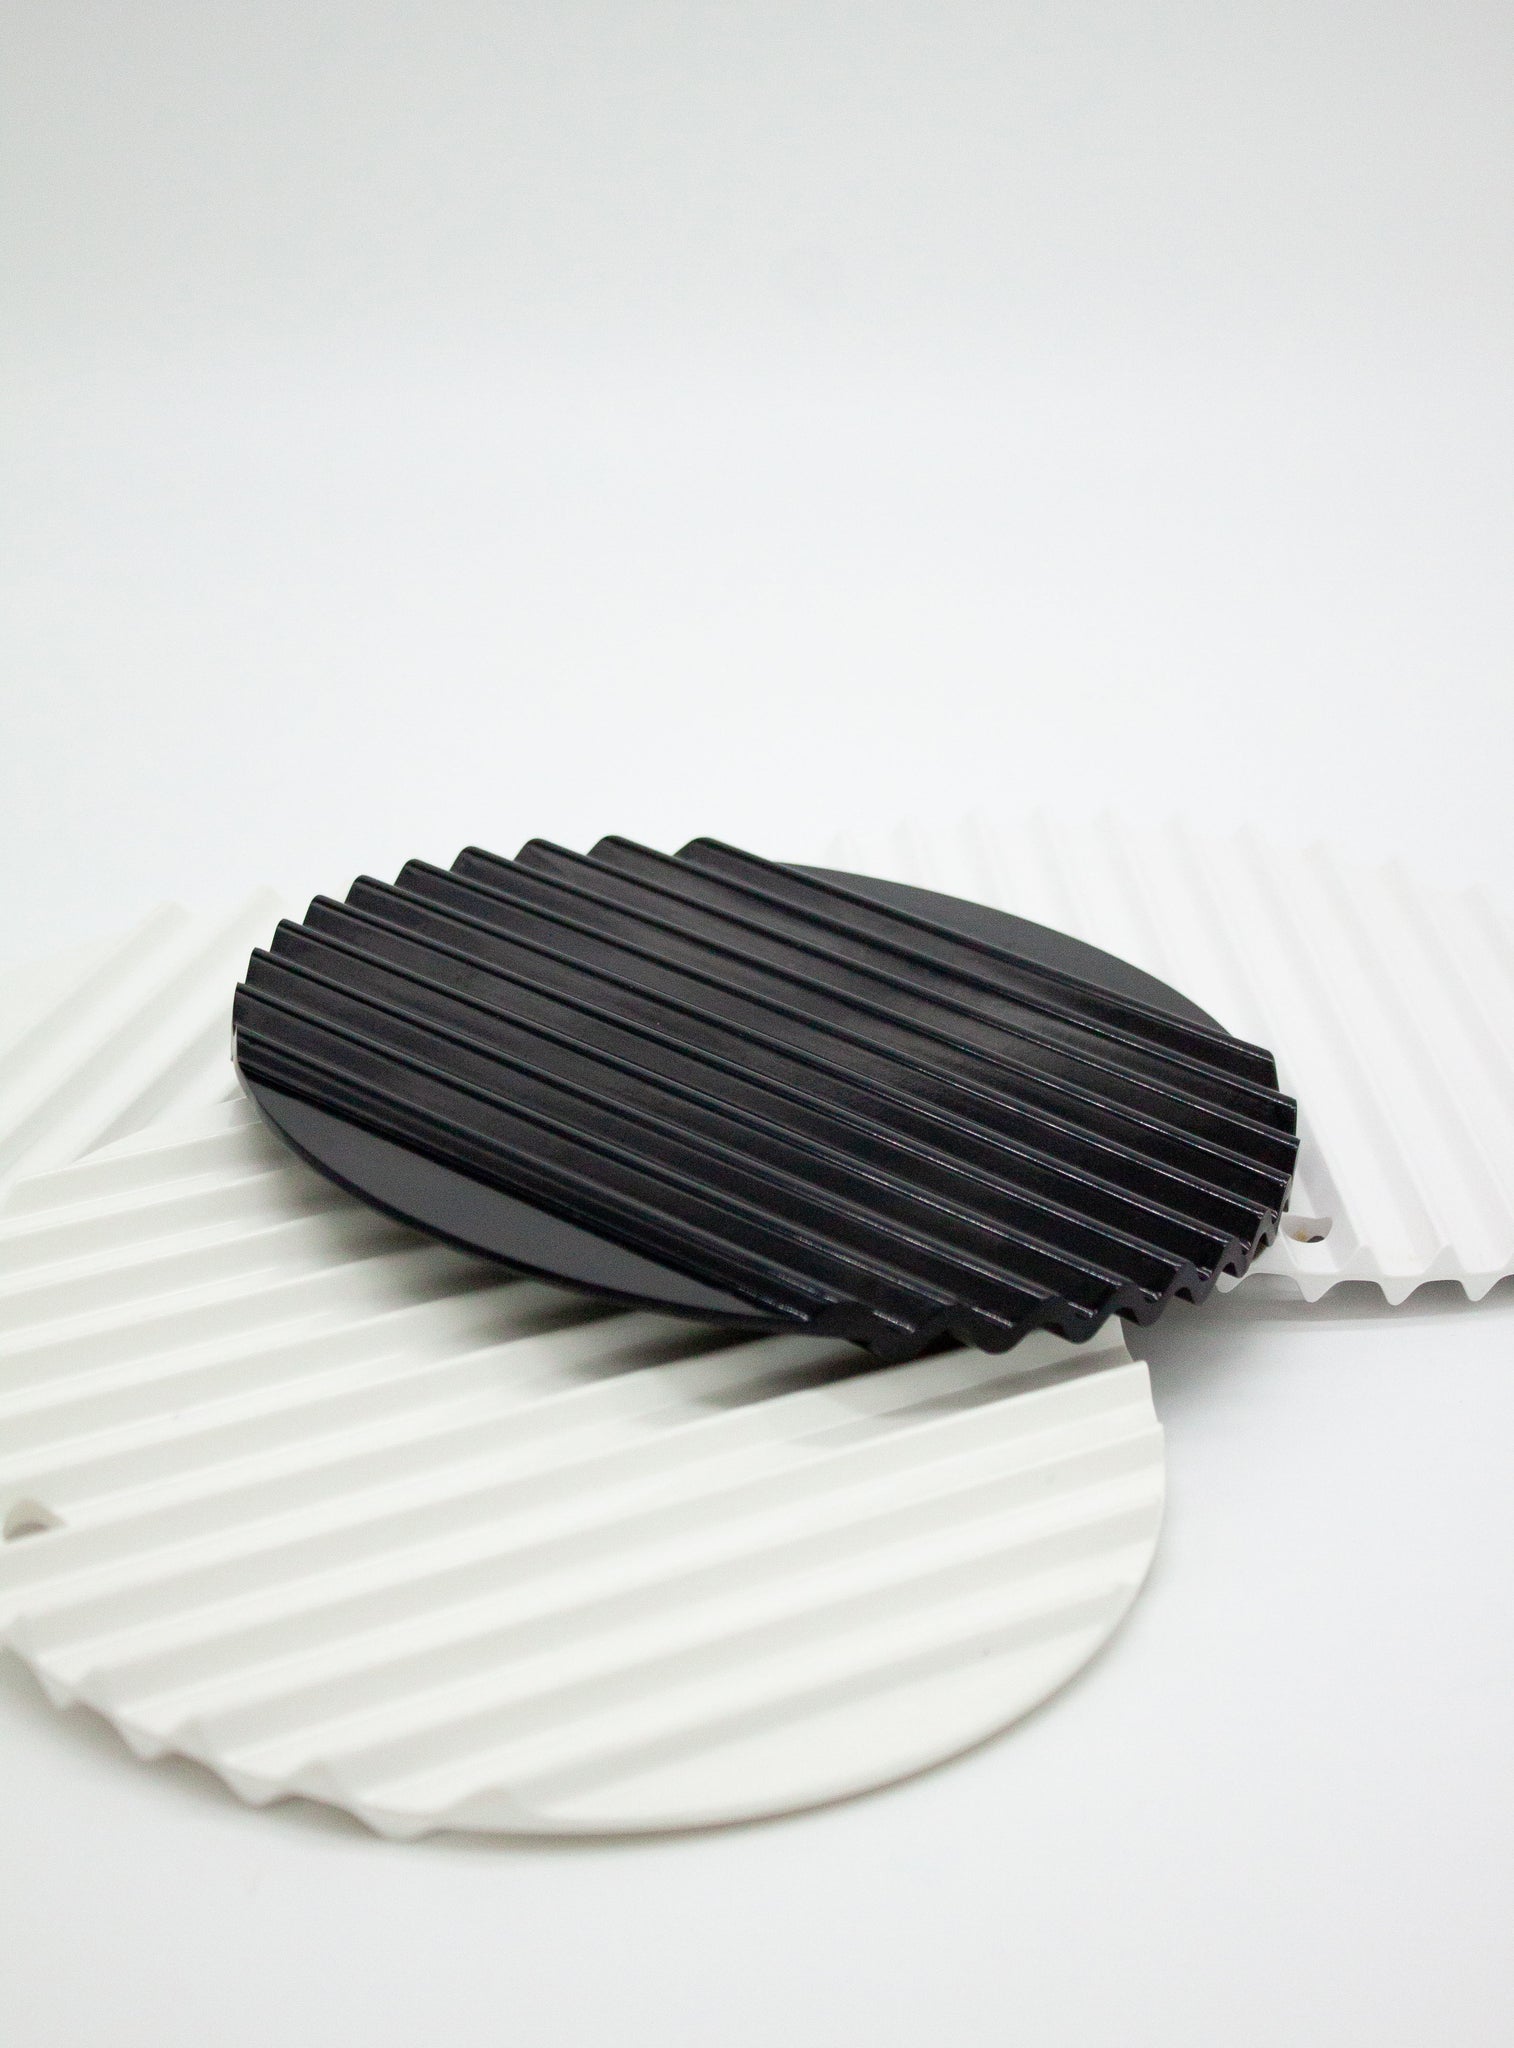 Ribbed Pan Coaster (White & Black)